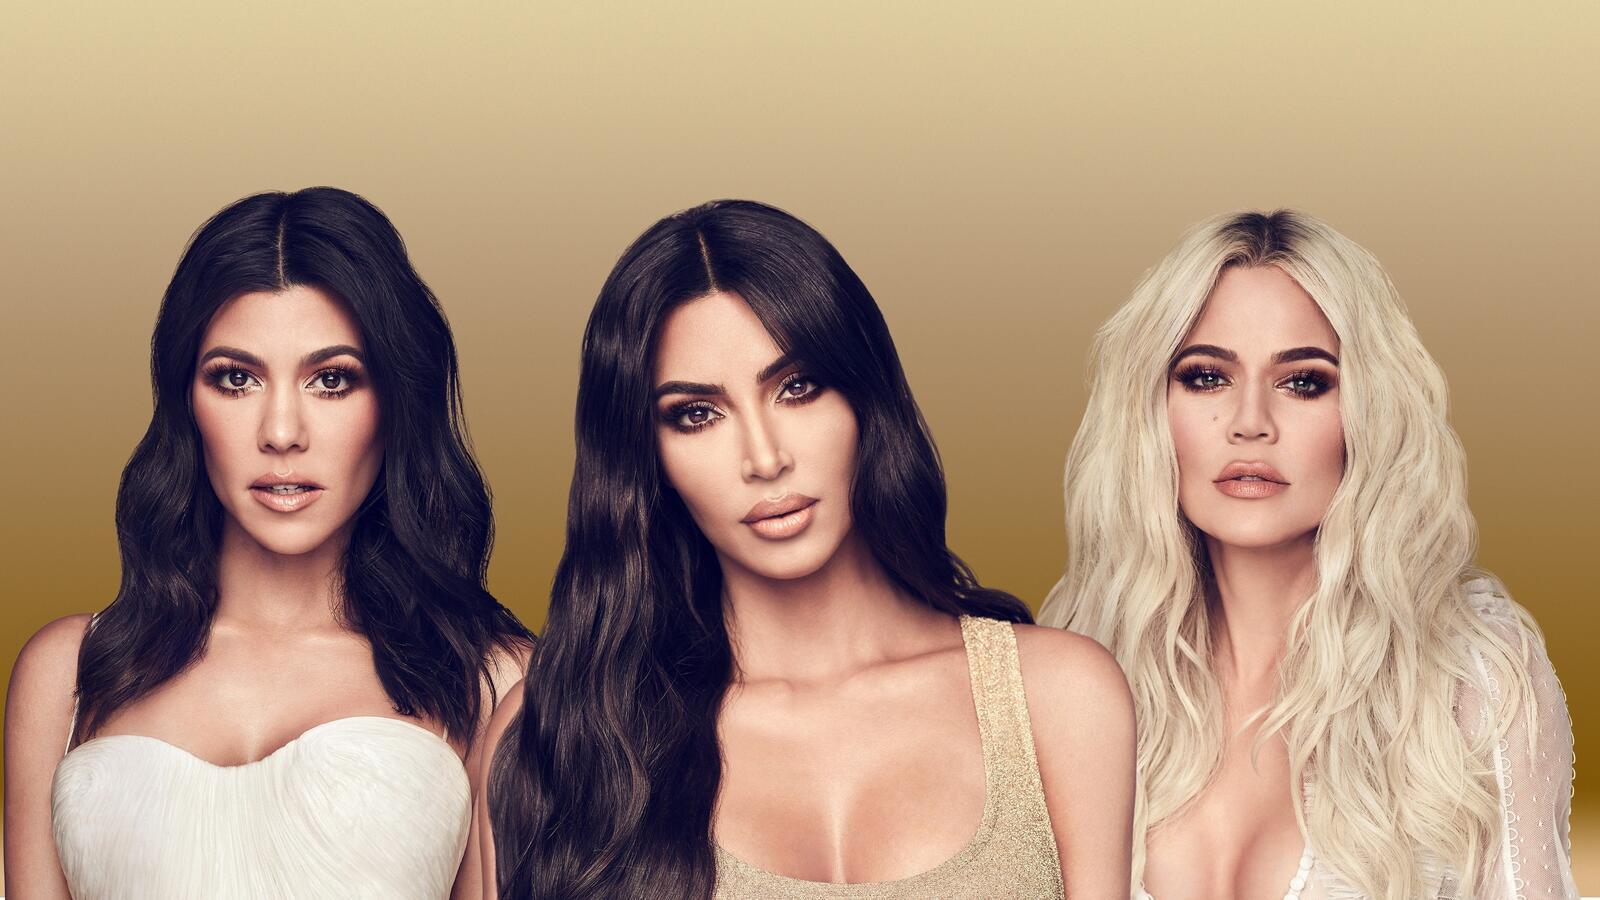 Wallpapers girls Keeping Up With The Kardashians Kim Kardashian on the desktop